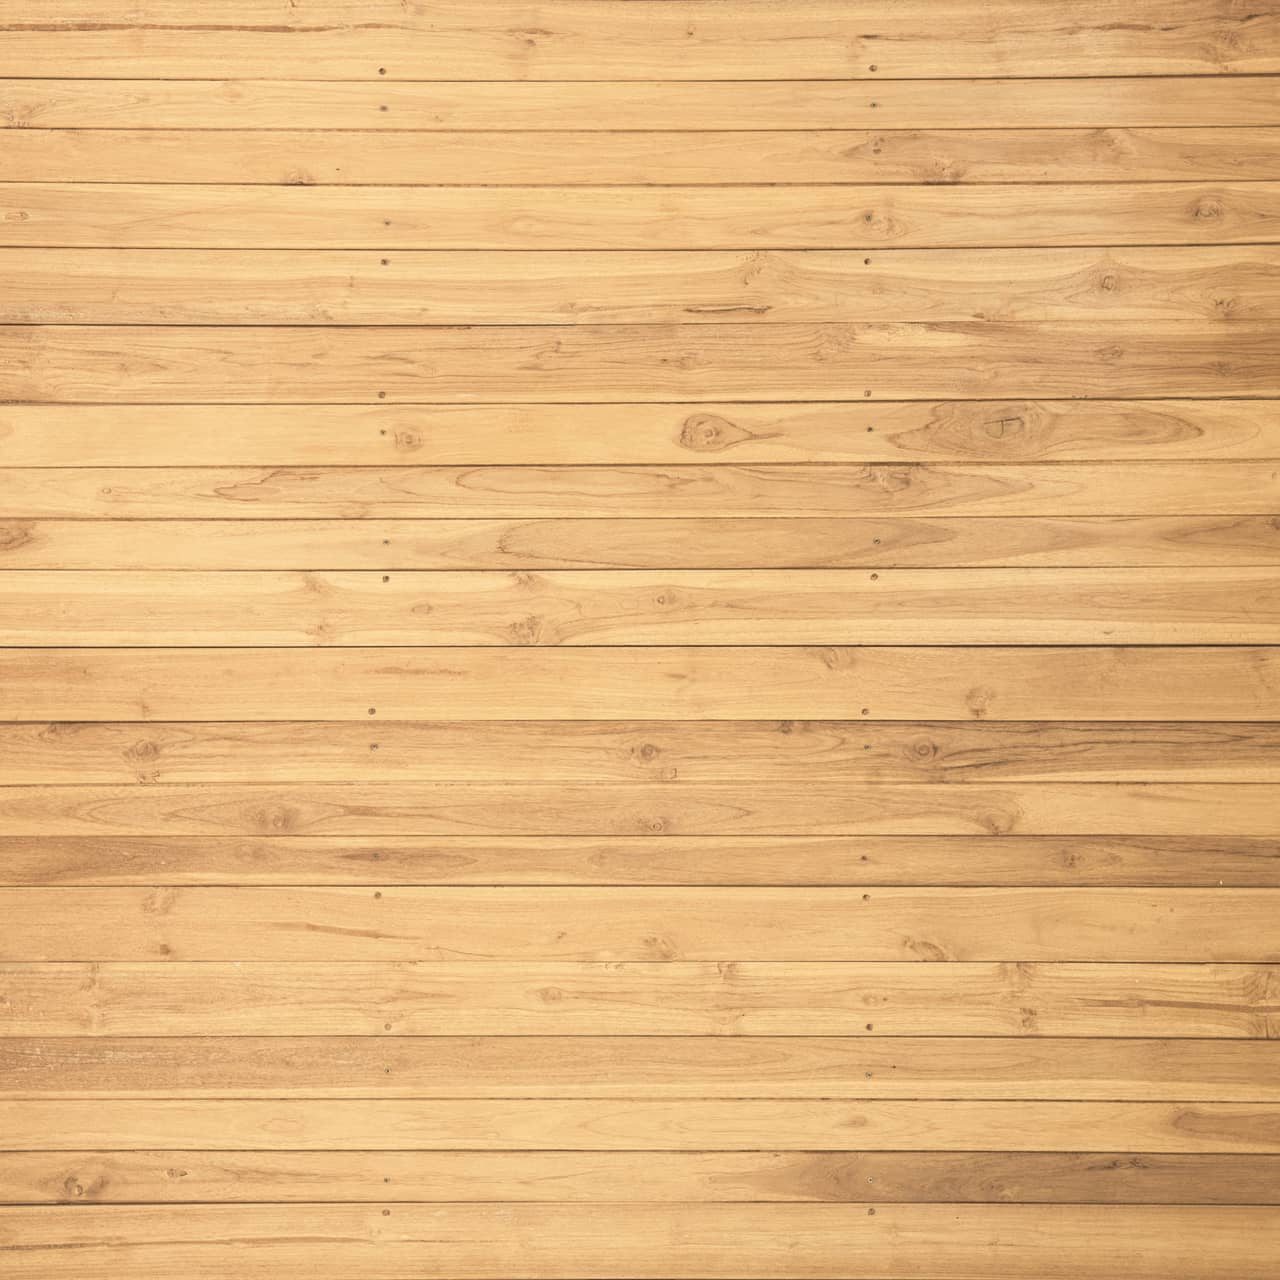 Wood Flooring - Home Interior Design